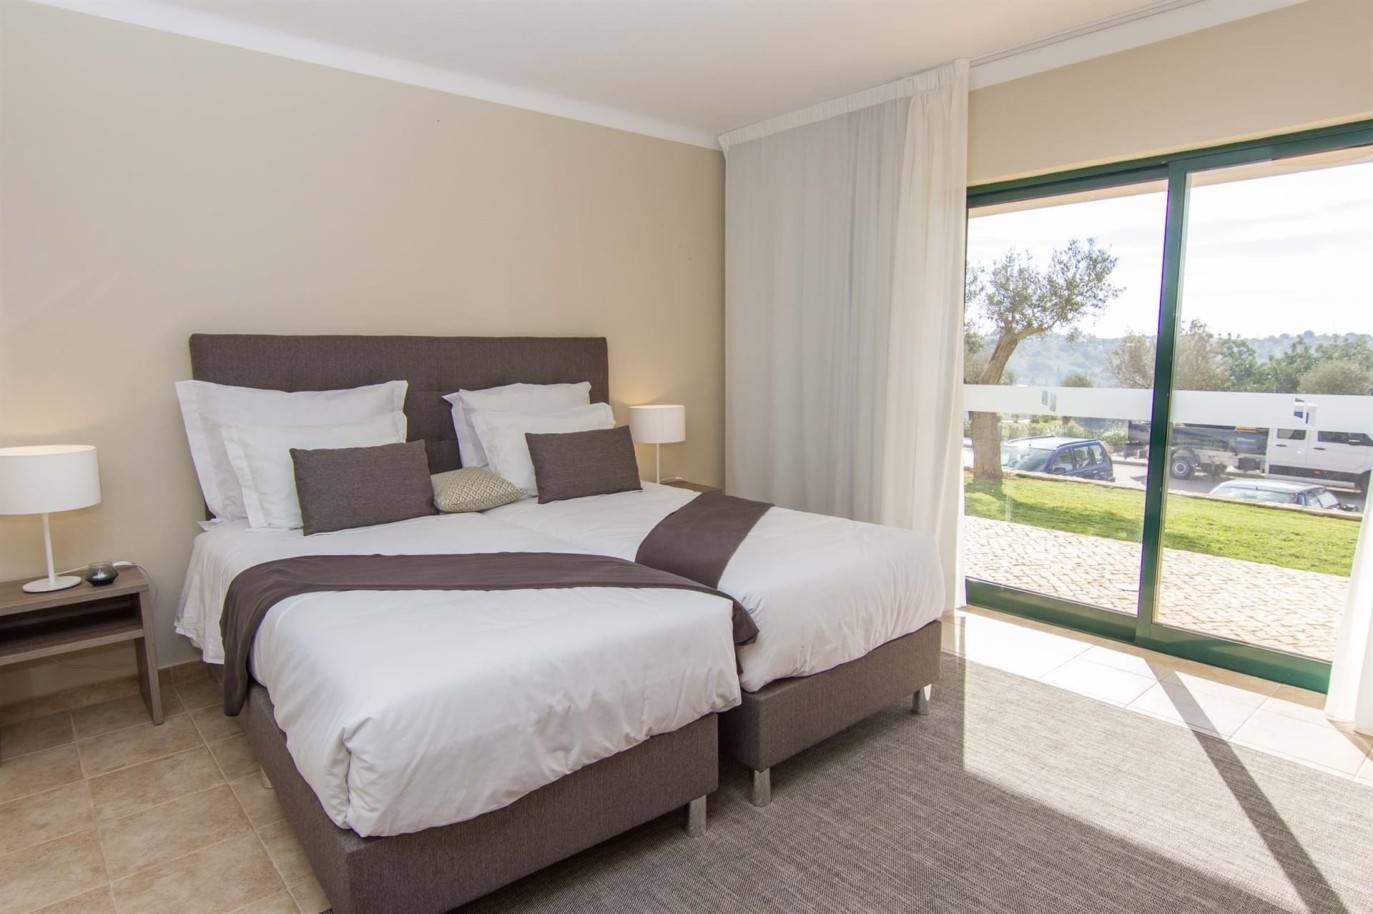 Venta de apartamento nuevo en el Carvoeiro, Algarve, Portugal_215629